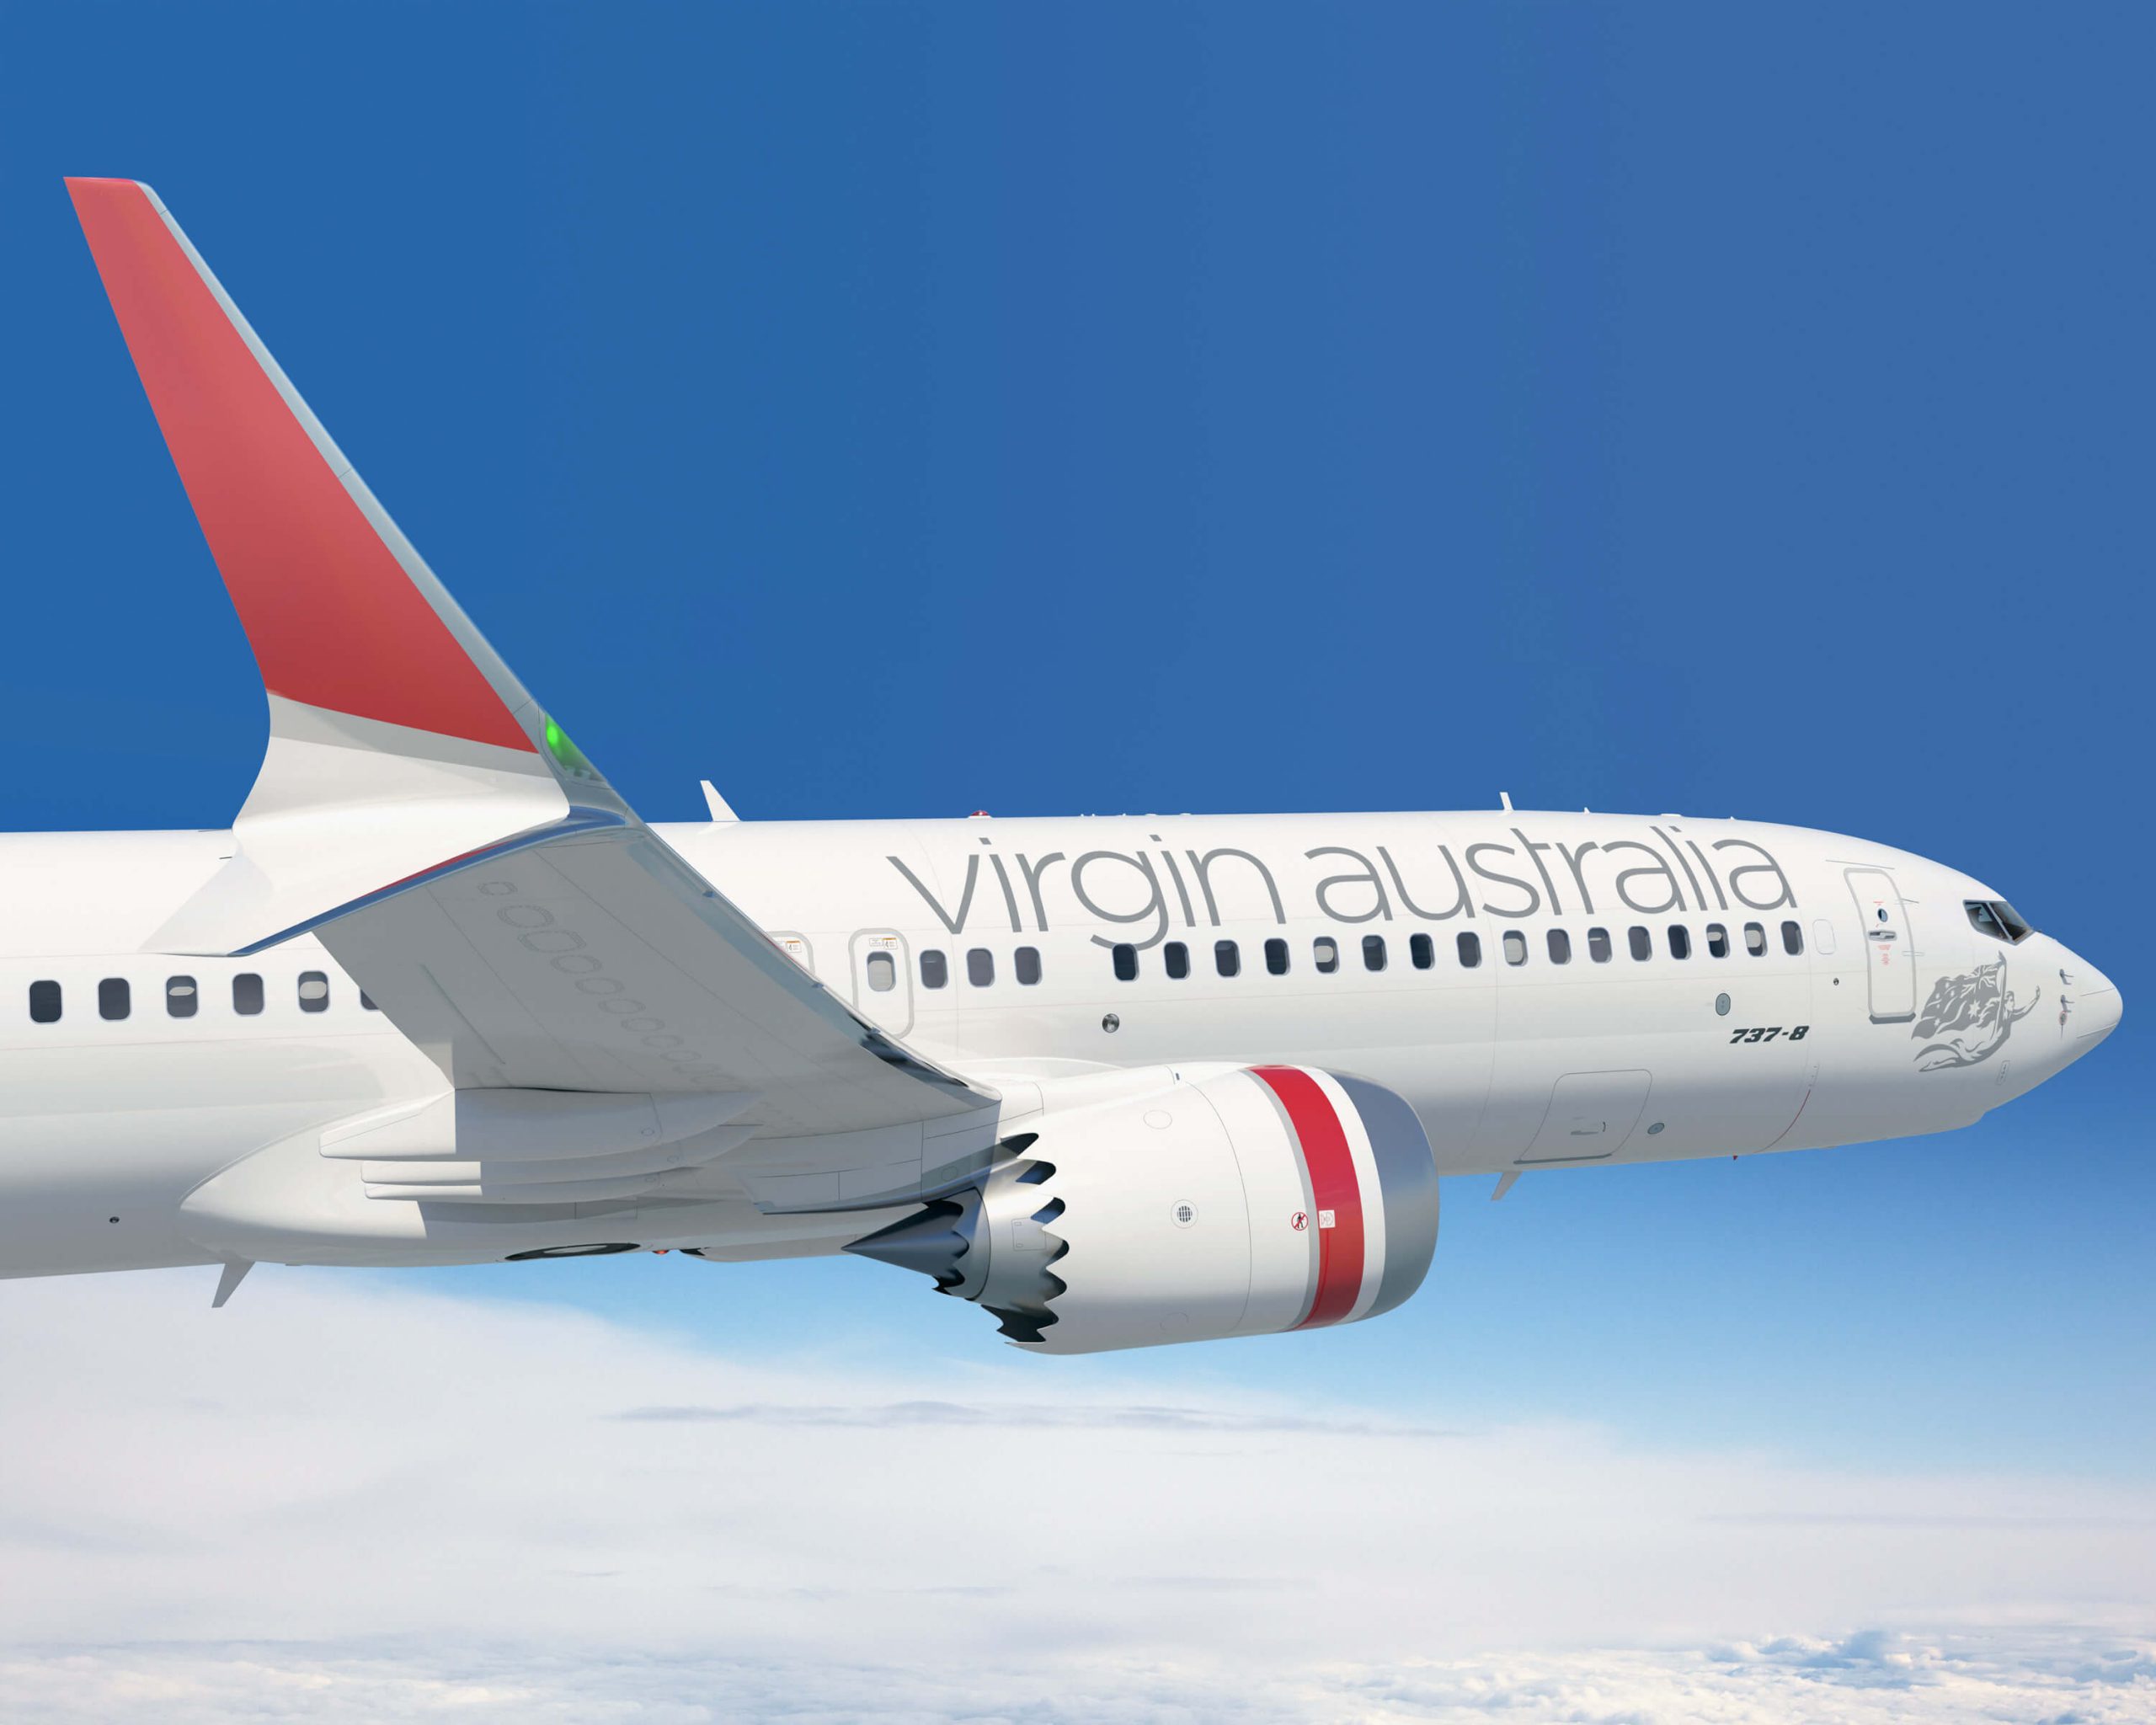 Virgin Australia expands routes to popular tourist destinations